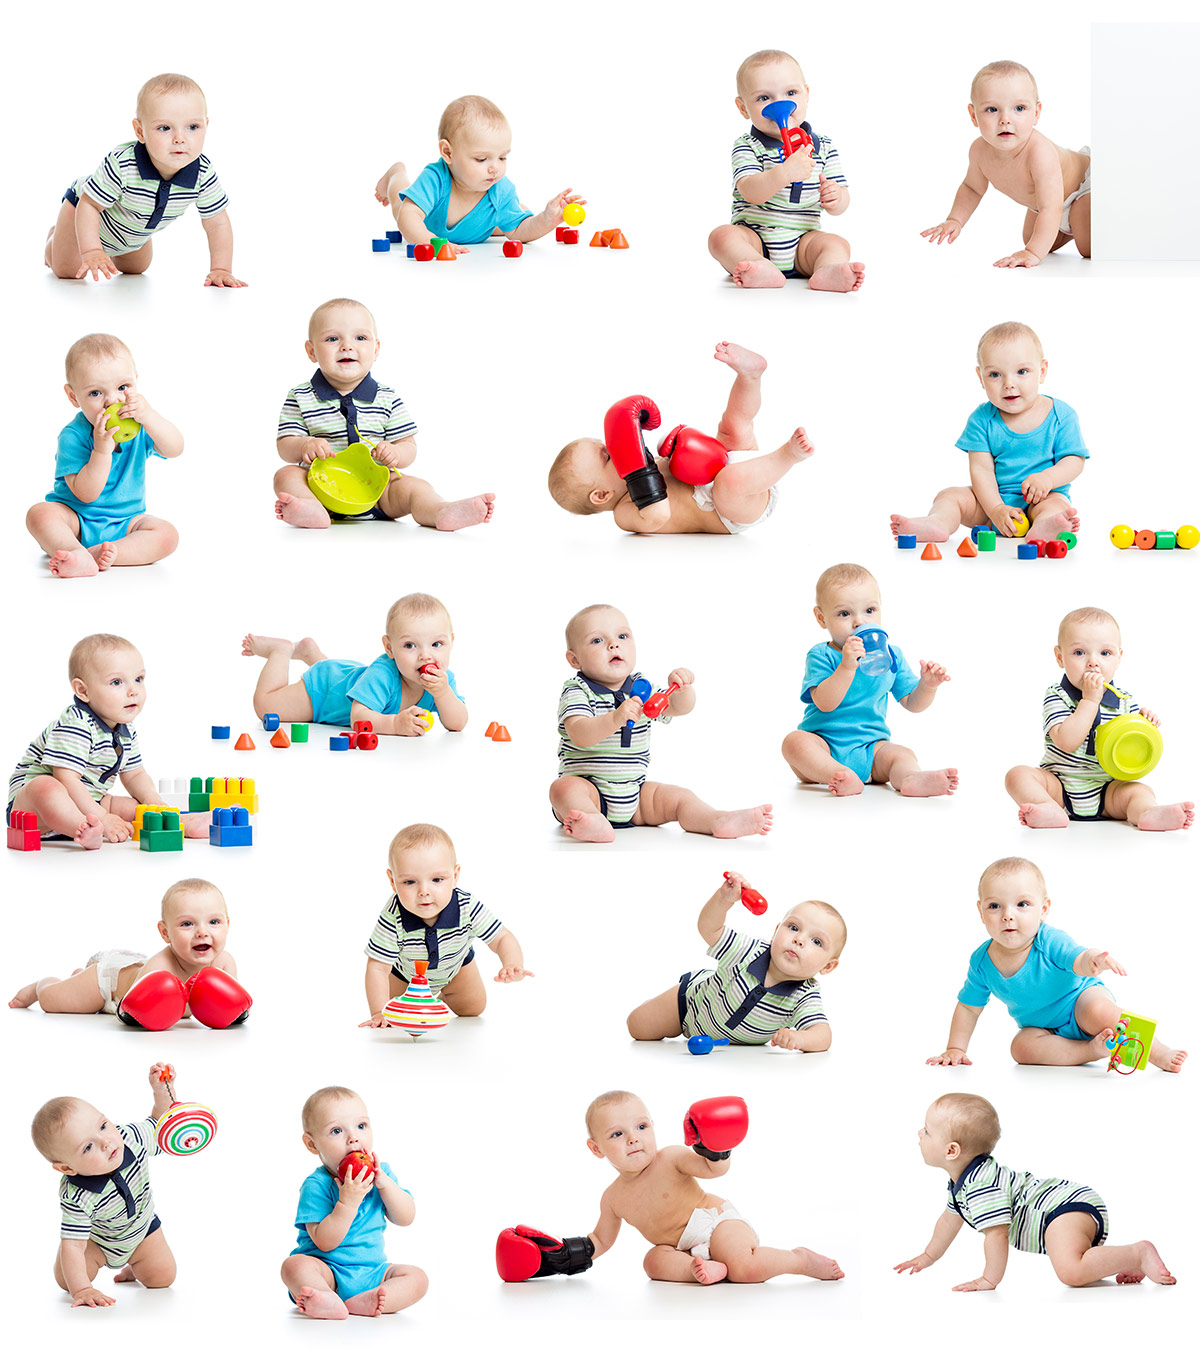 22为1至12个月大的宝宝提供有趣的游戏活动